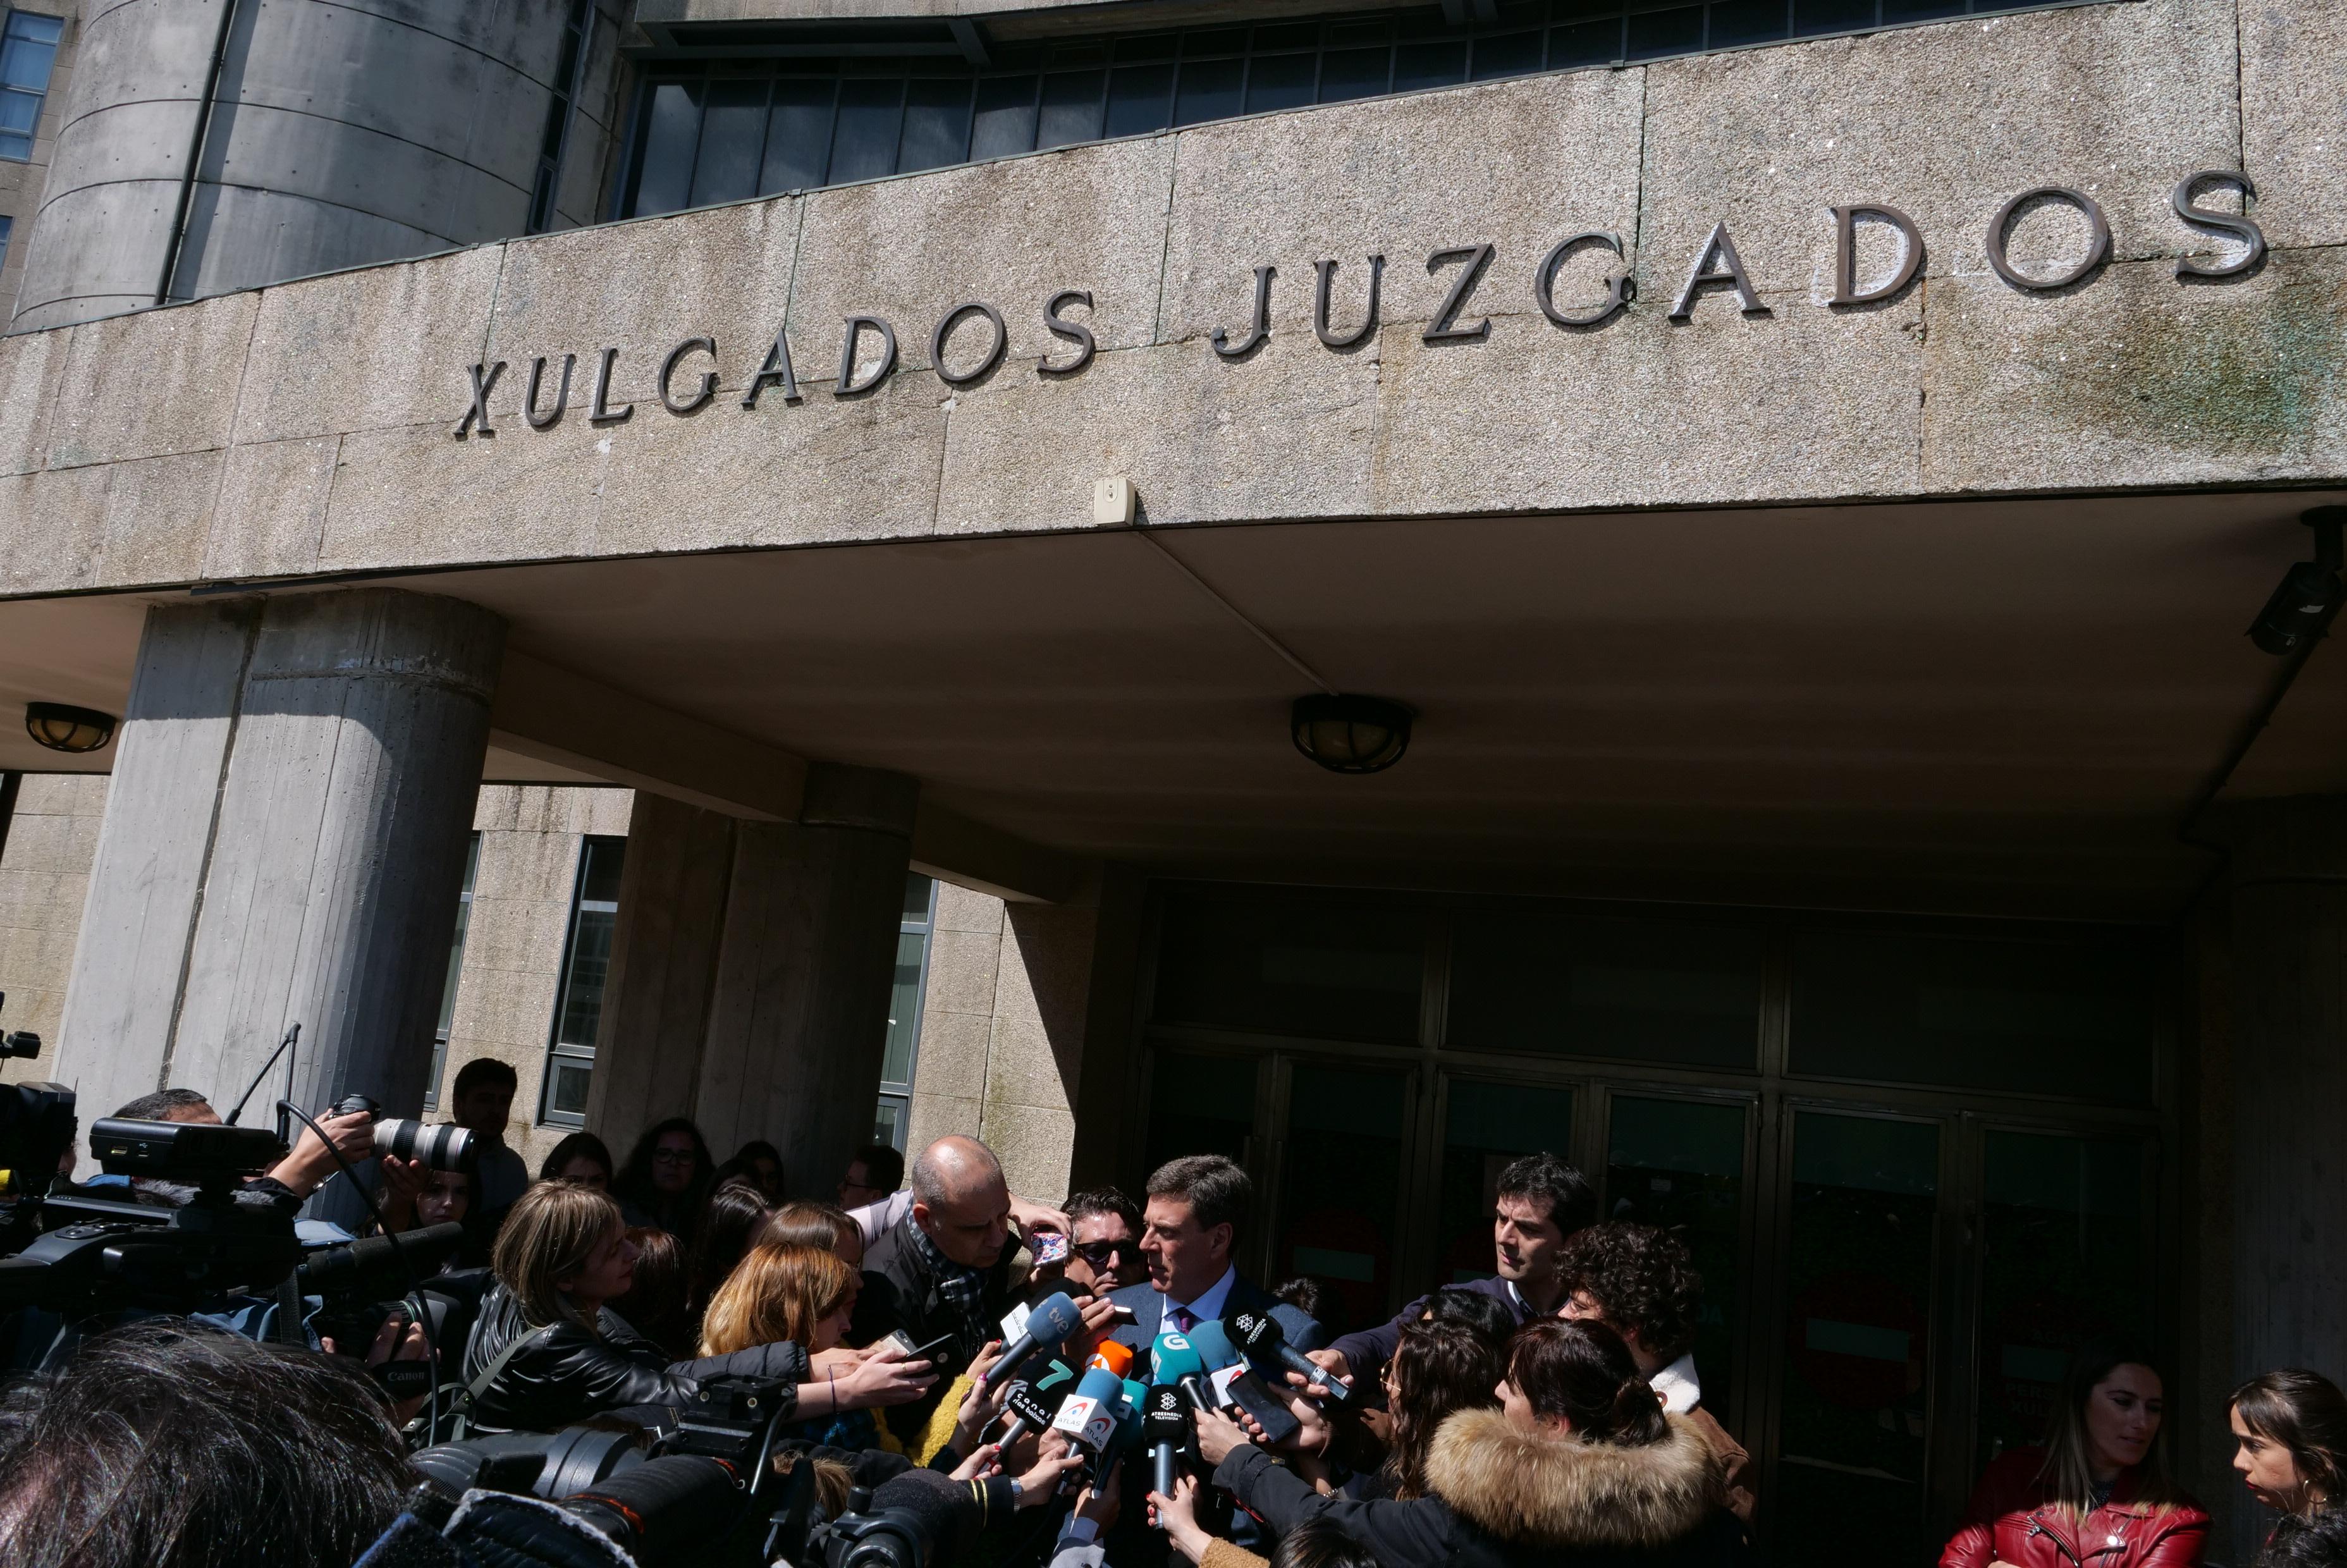 El padre de Diana Quer Juan Carlos Quer ofrece declaraciones a los medios de comunicación a la salida de la Audiencia Provincial de A Coruña. Fuente: EP.